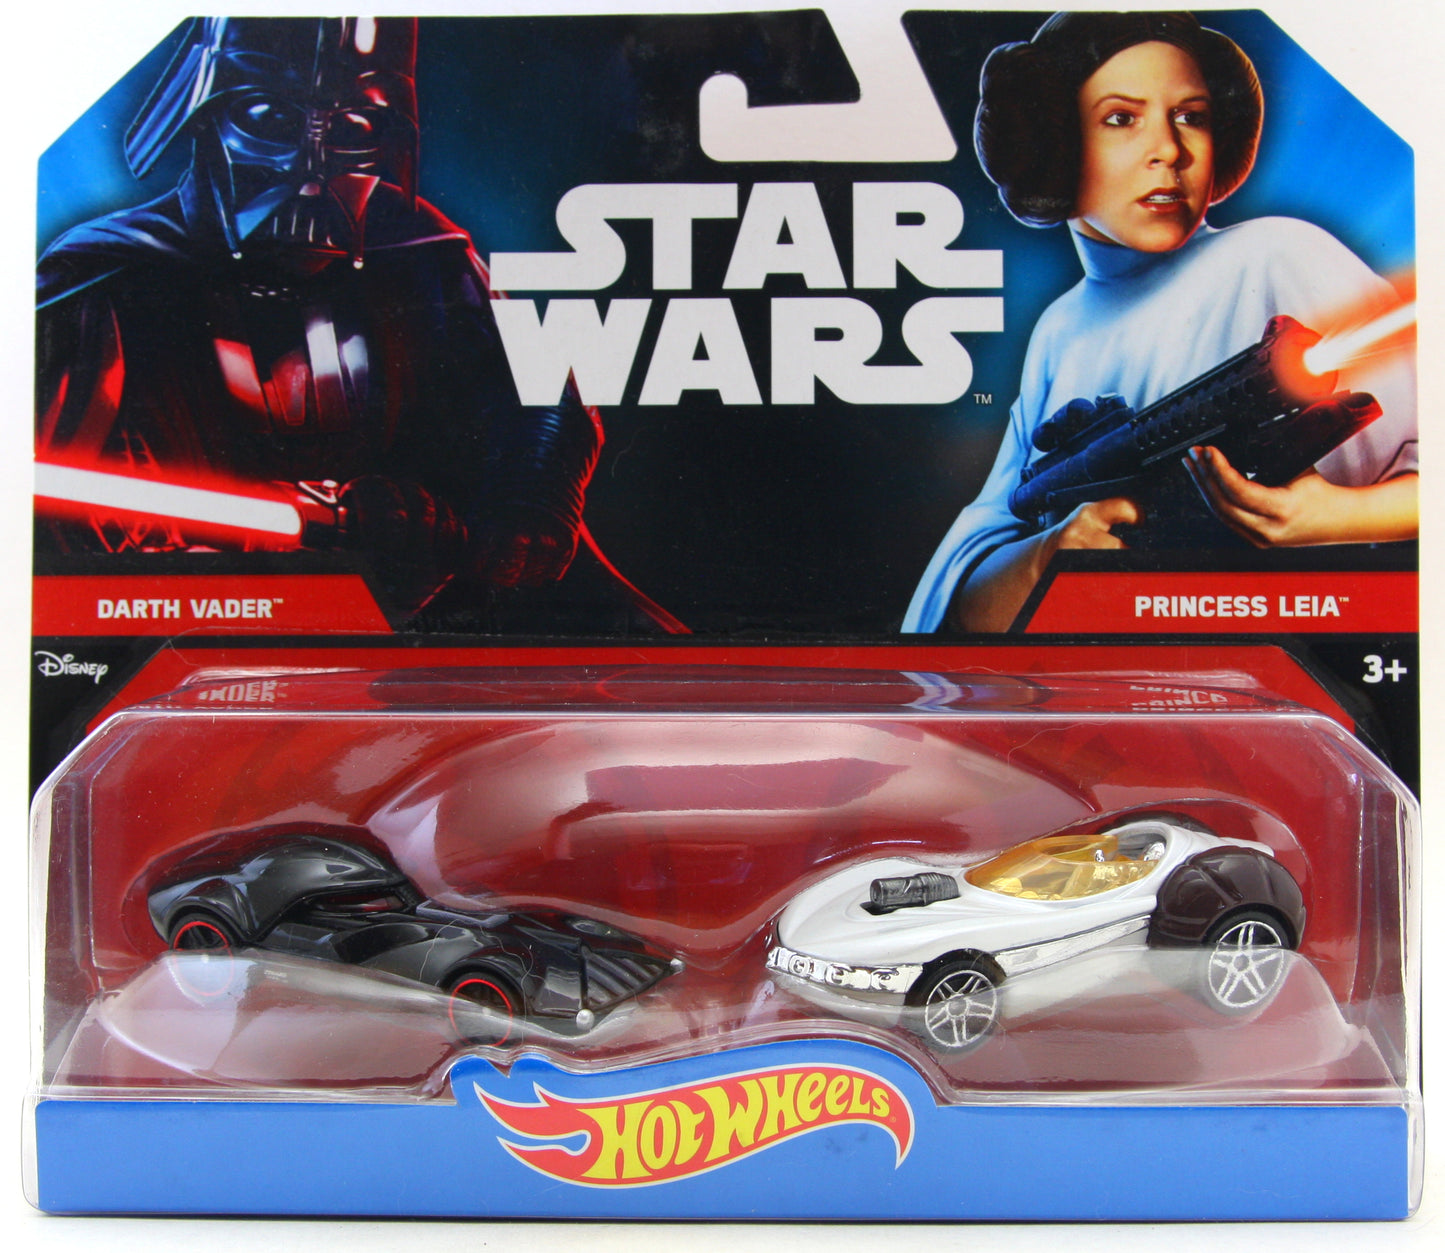 Hot Wheels 2016 - Star Wars Character Cars 2-Pack - Darth Vader vs. Princess Leia - Black & White